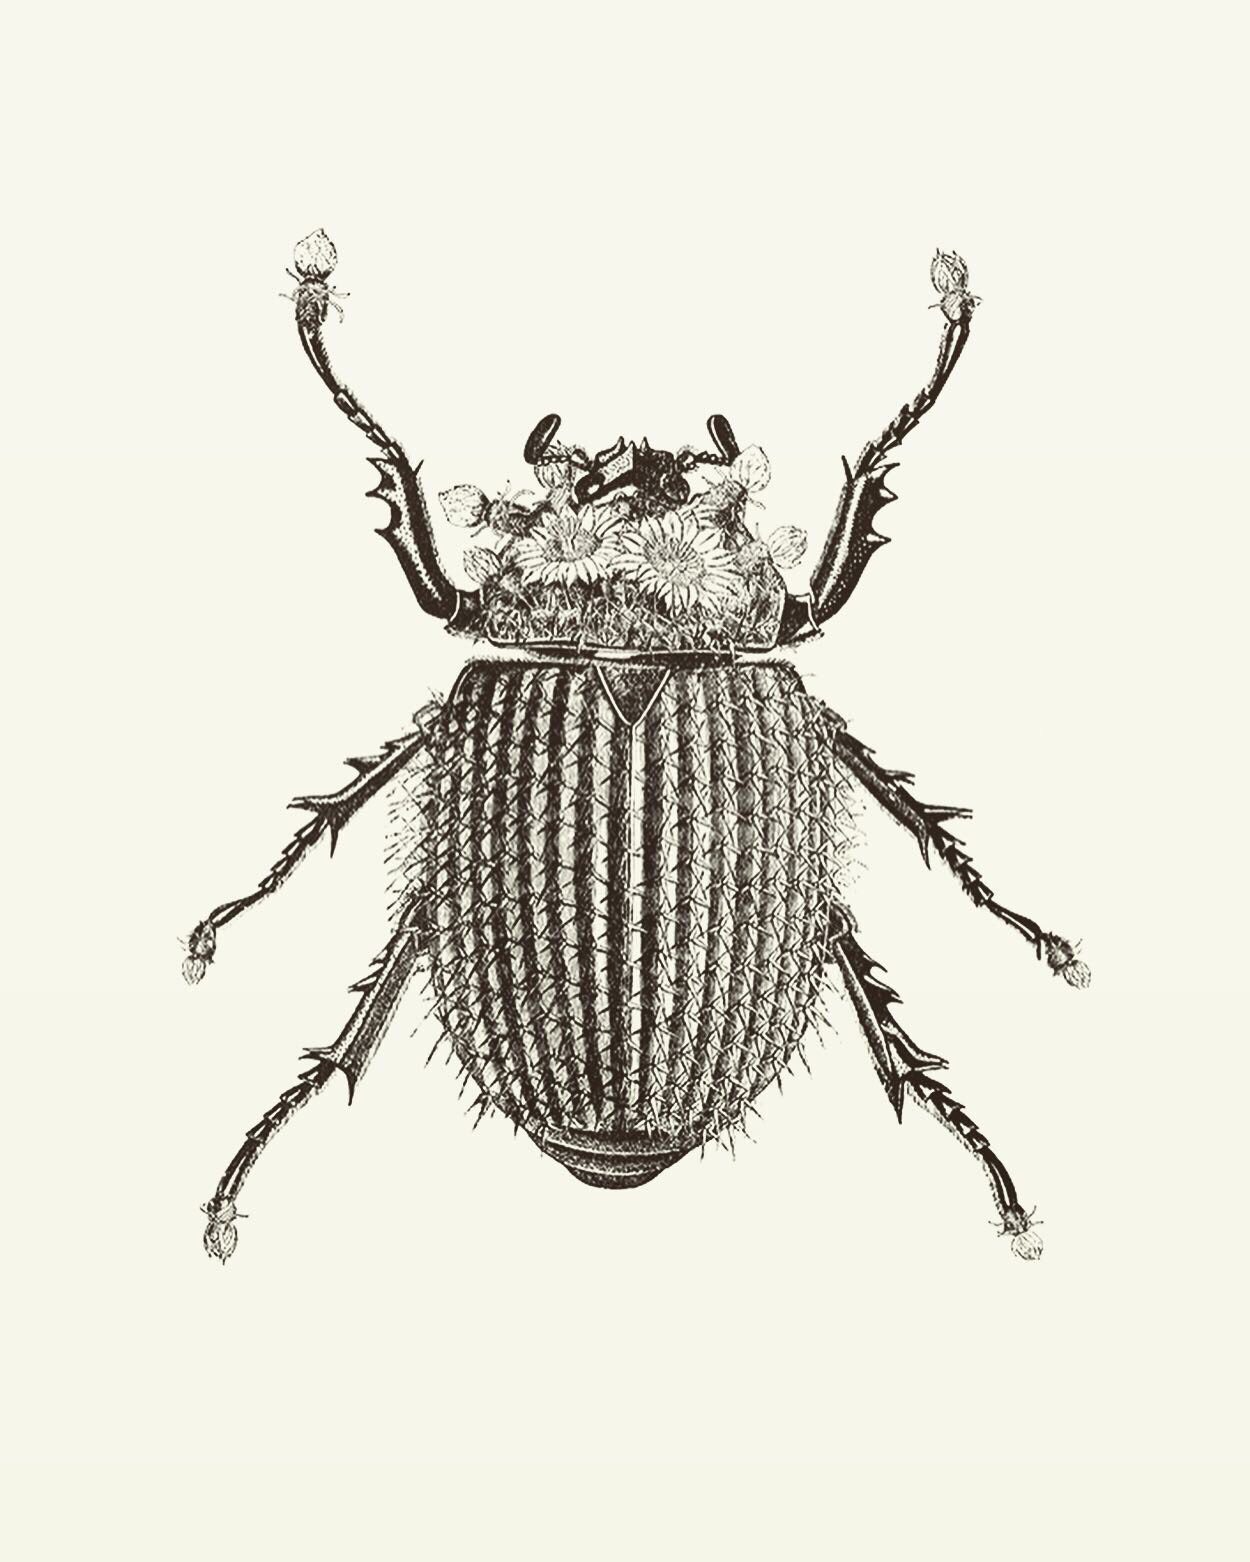 Animal Illustrations, wood engraving, Kaktuskäfer